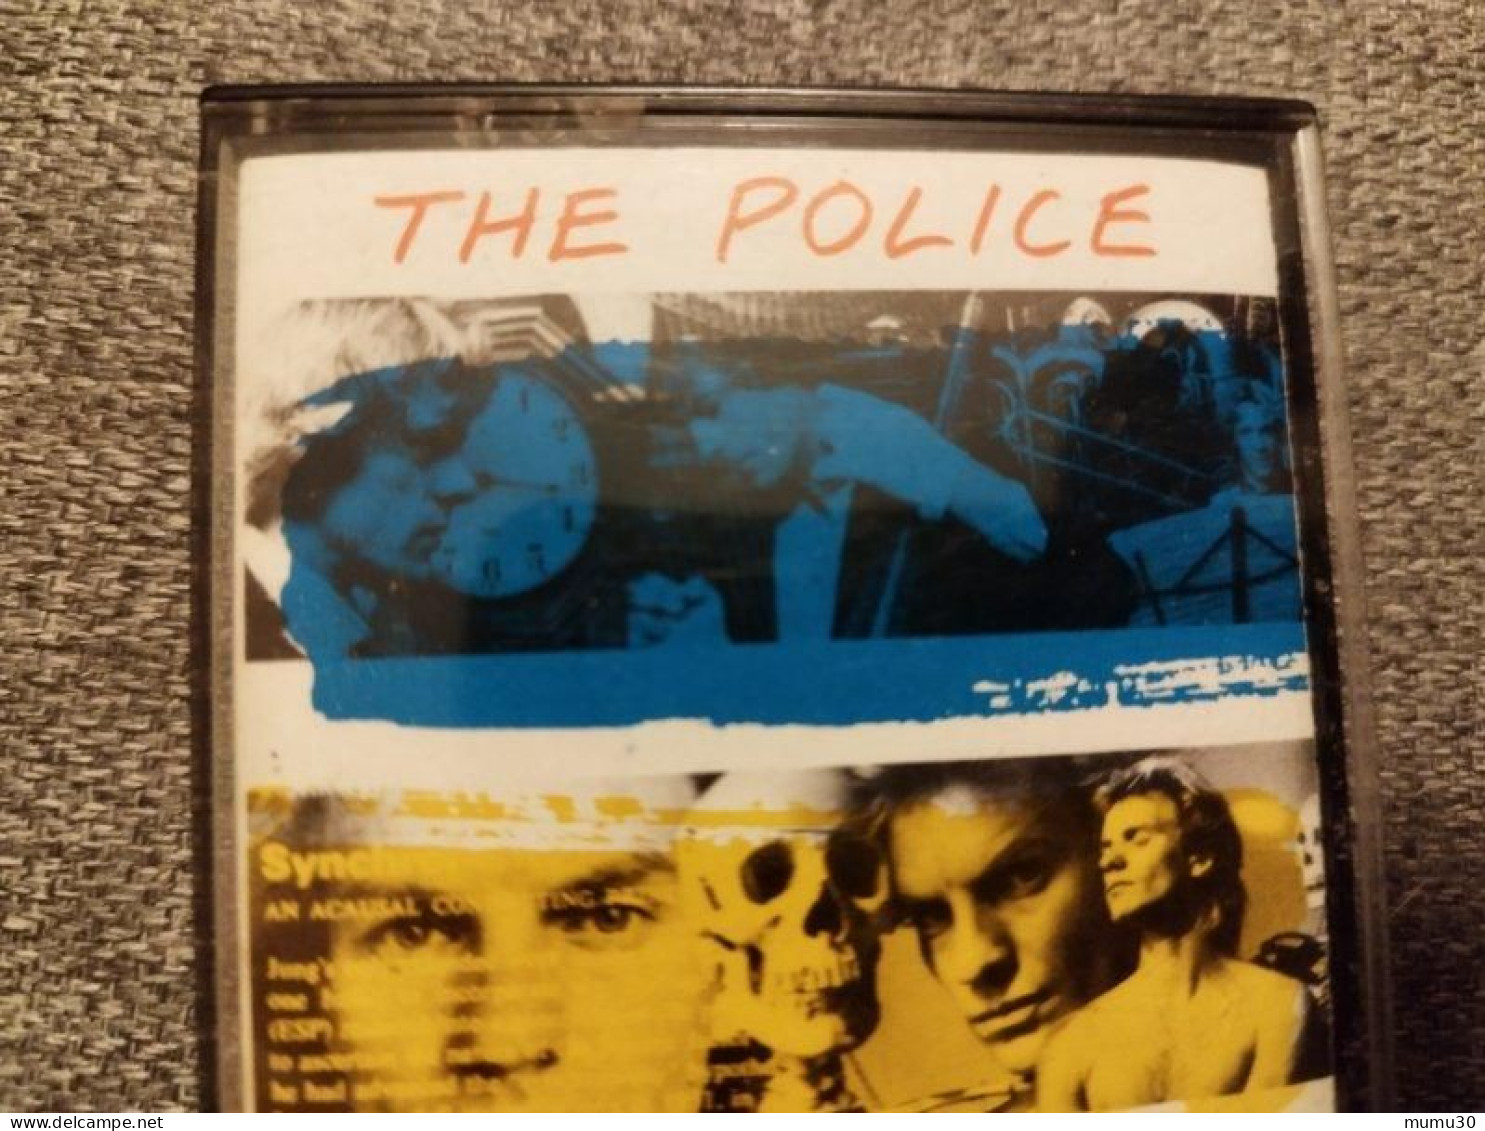 Album The Police K7 Audio Synchronicity - Audiokassetten